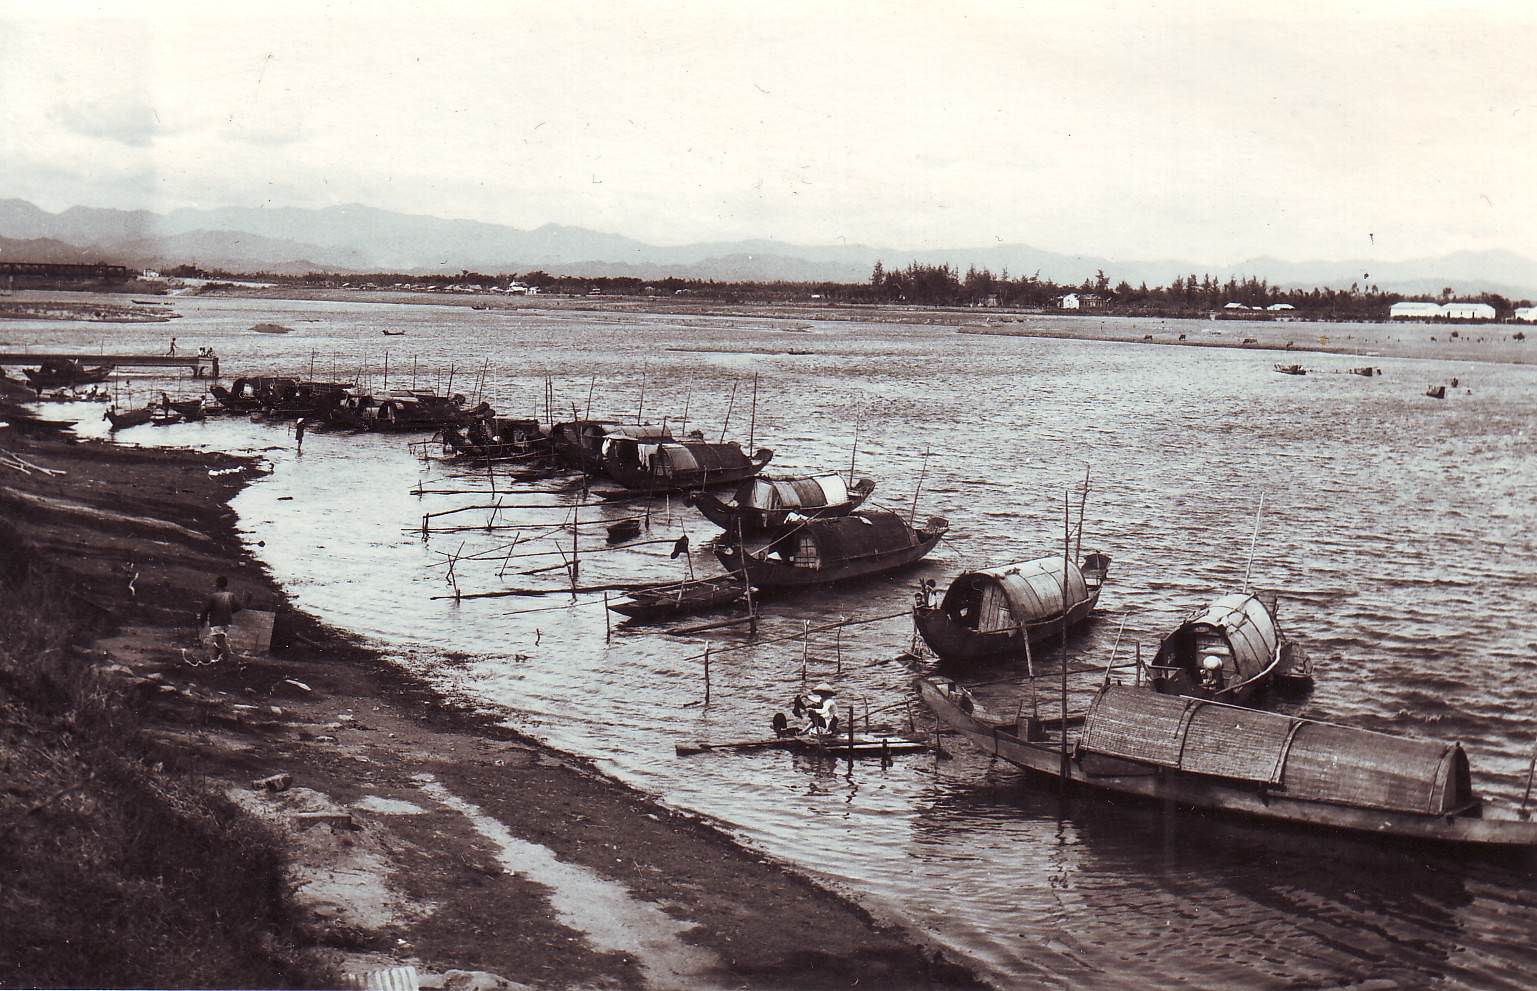 Ghe thuyền trên sông Thạch Hãn gần TP Quảng Trị 1967